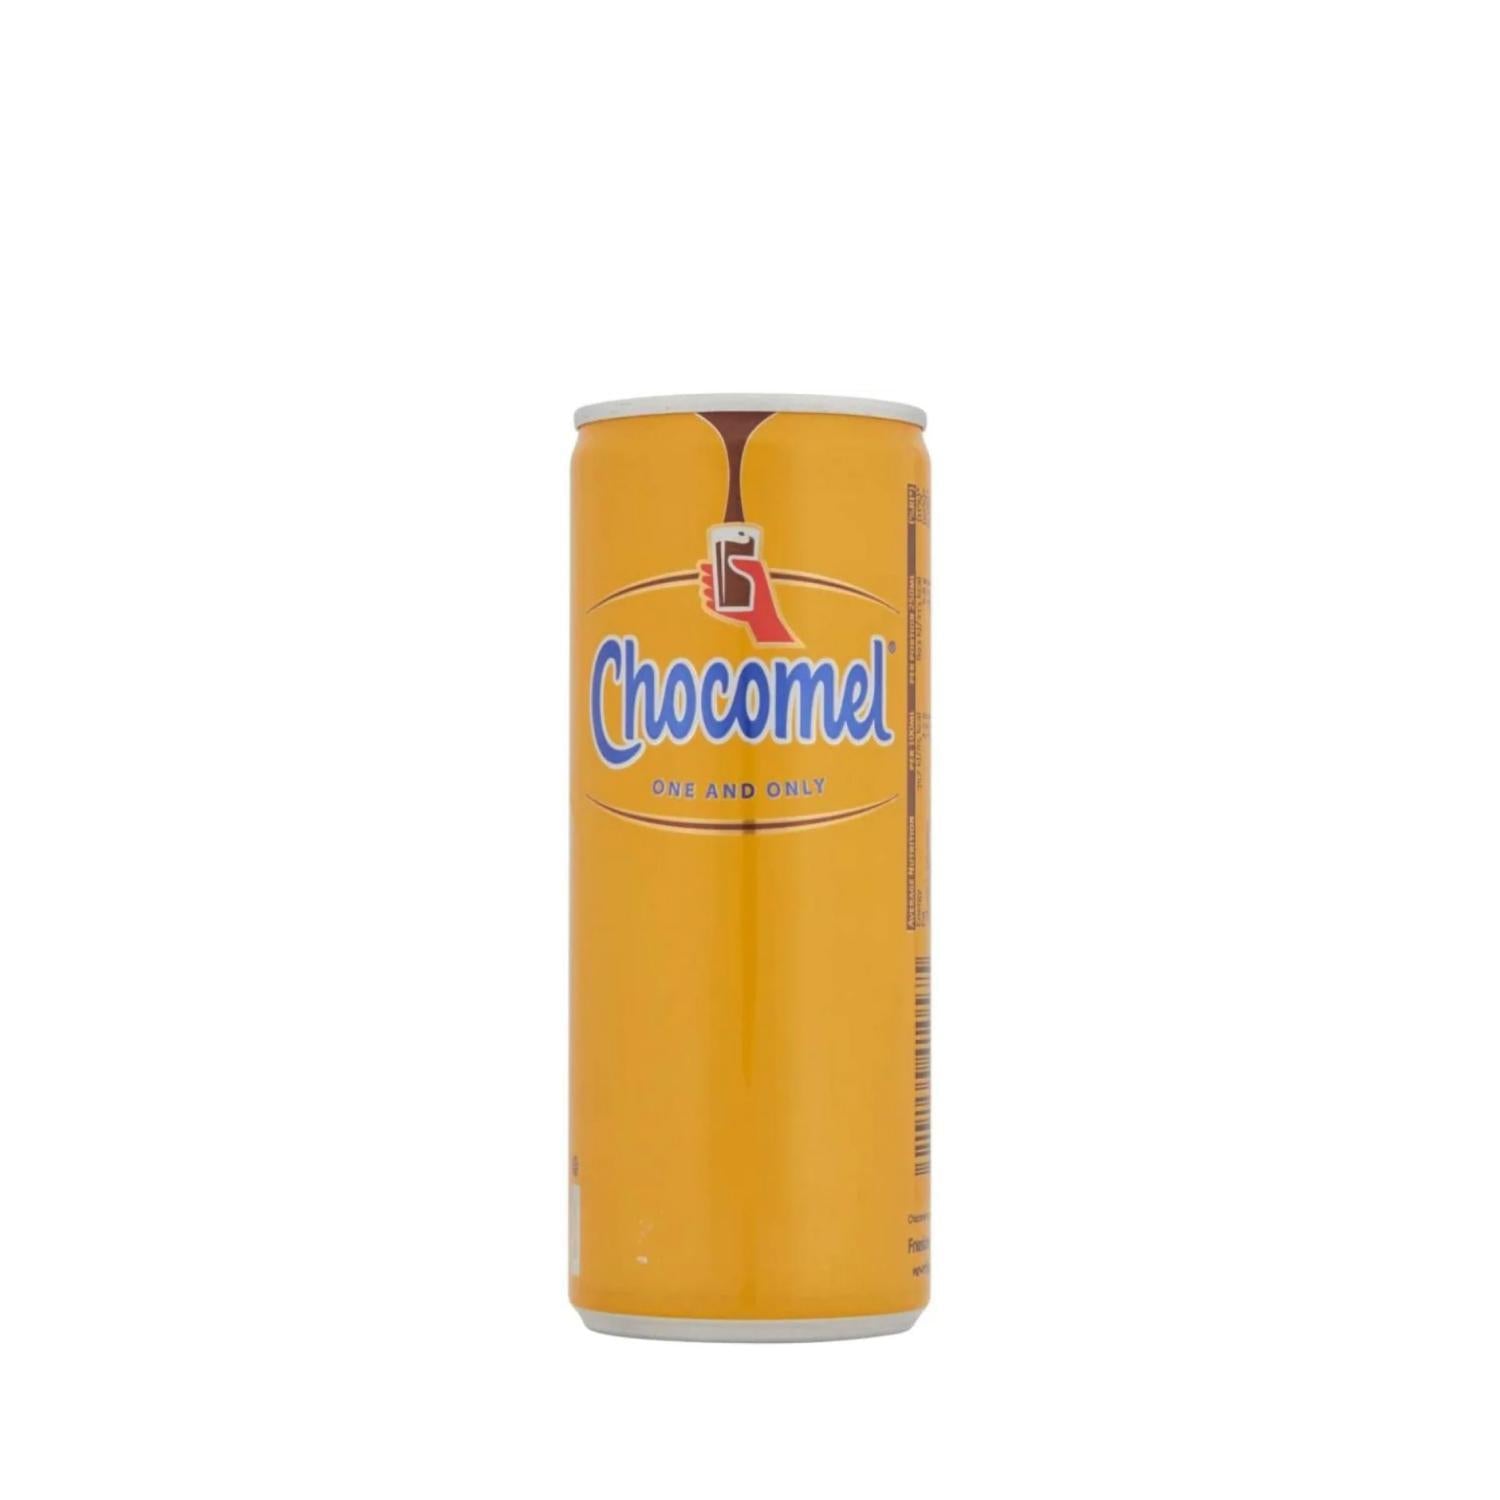 Chocomel - Original